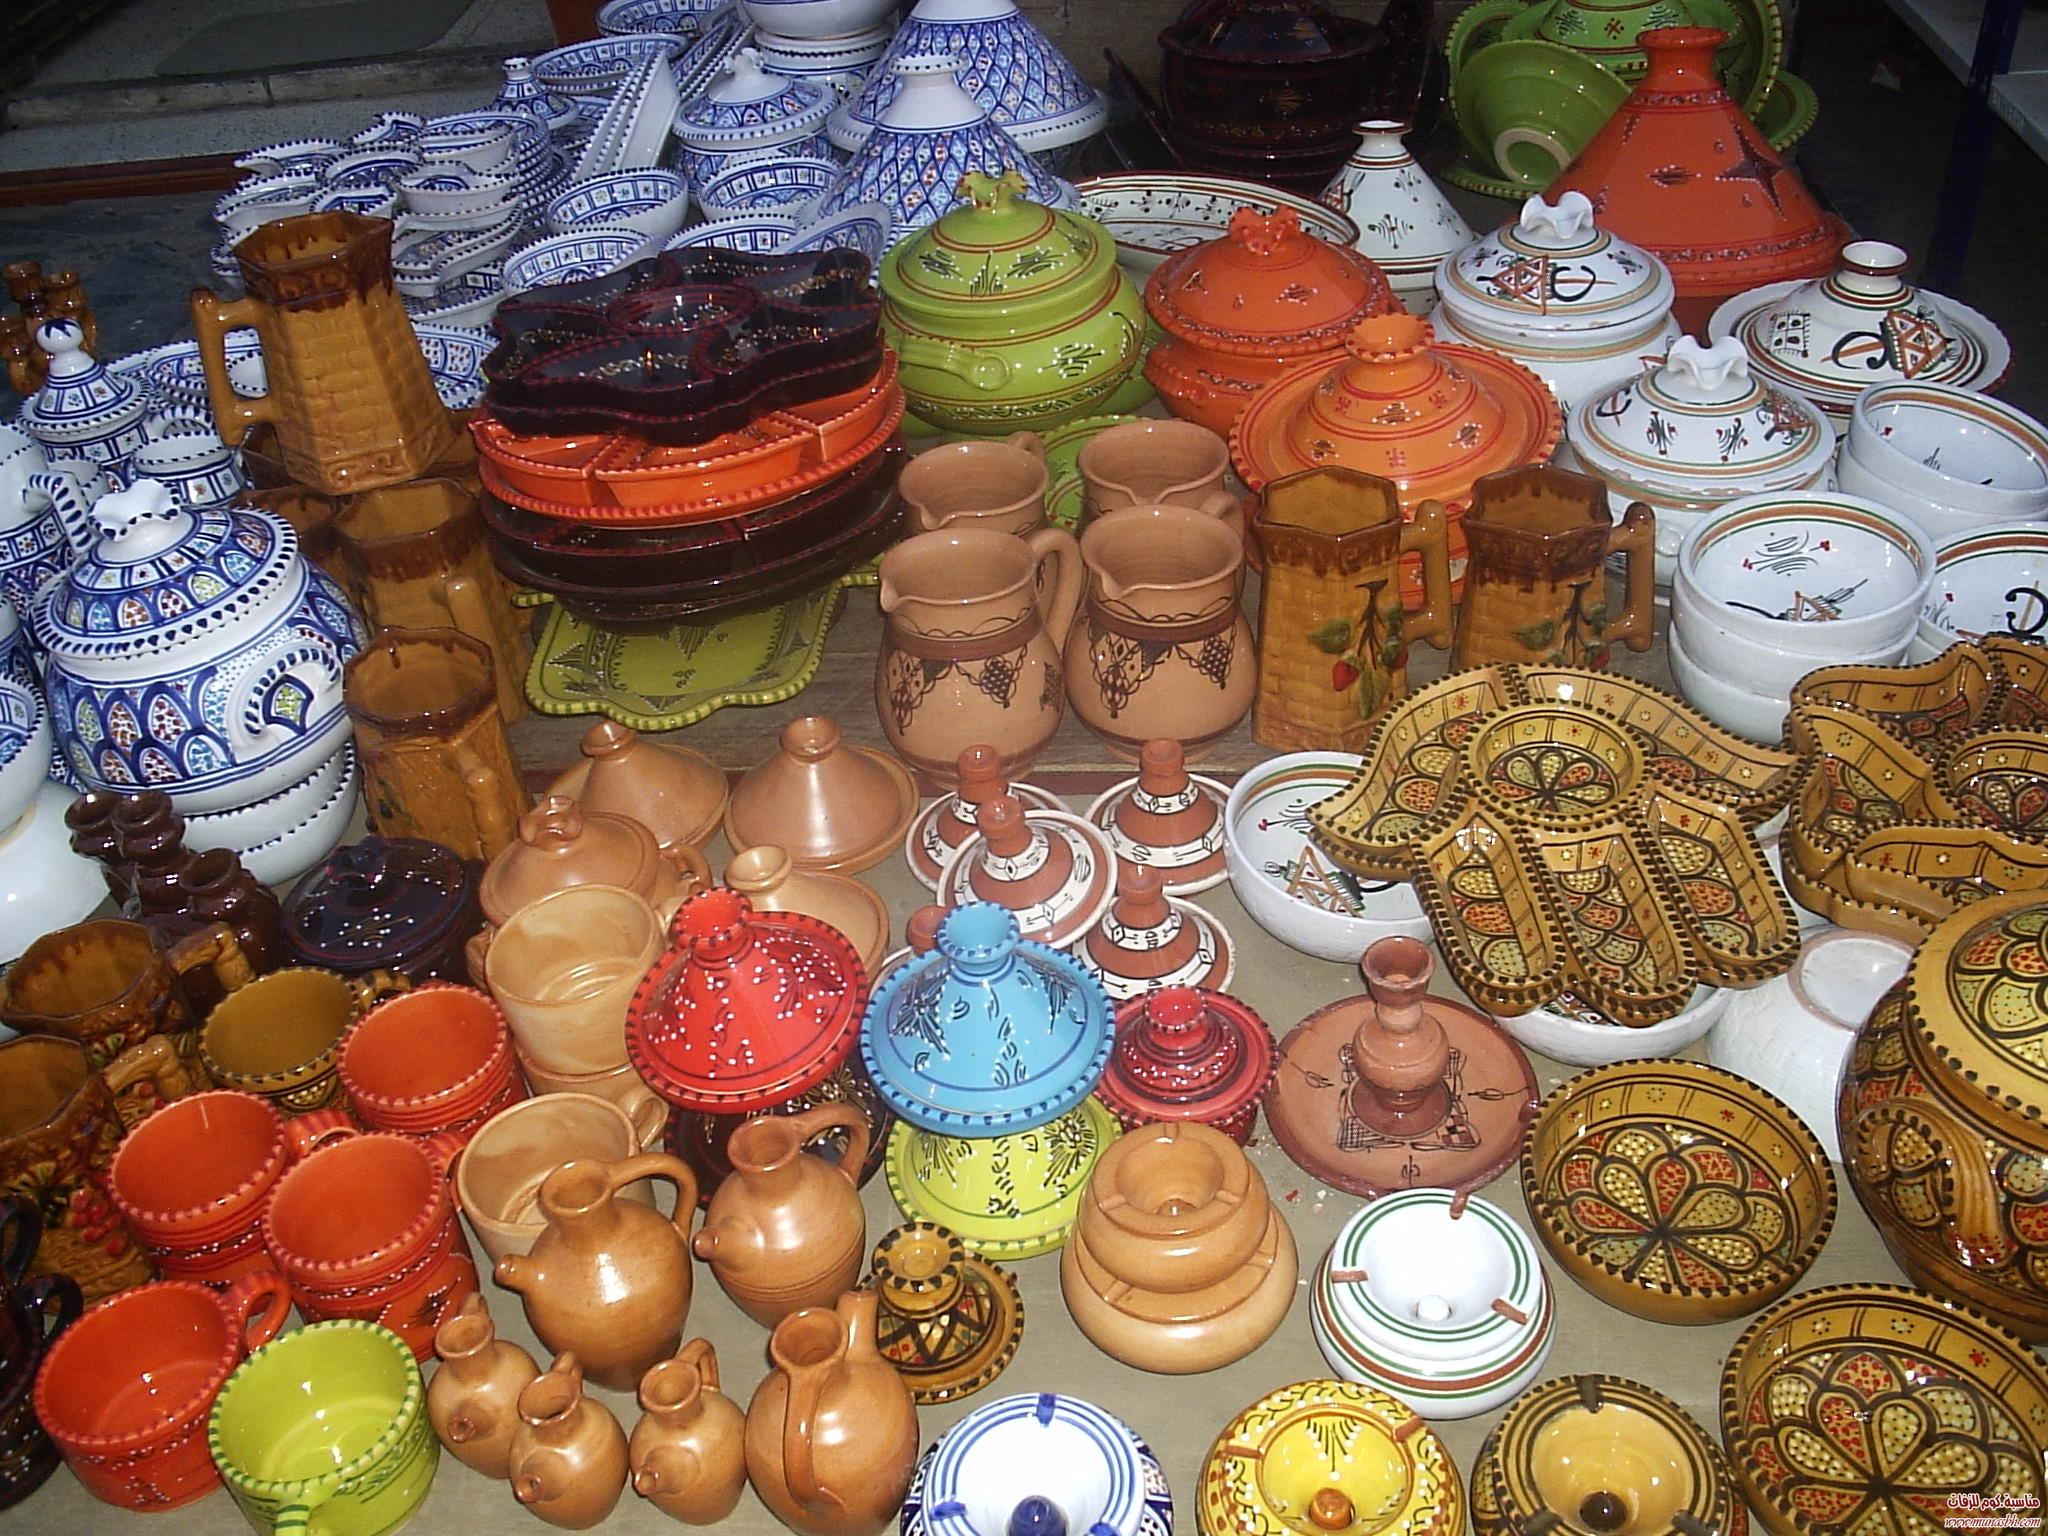 ديكورات تقليدية جزائرية من منطقة الحمدانية الجزائرية 0569944524-9d39338fb4